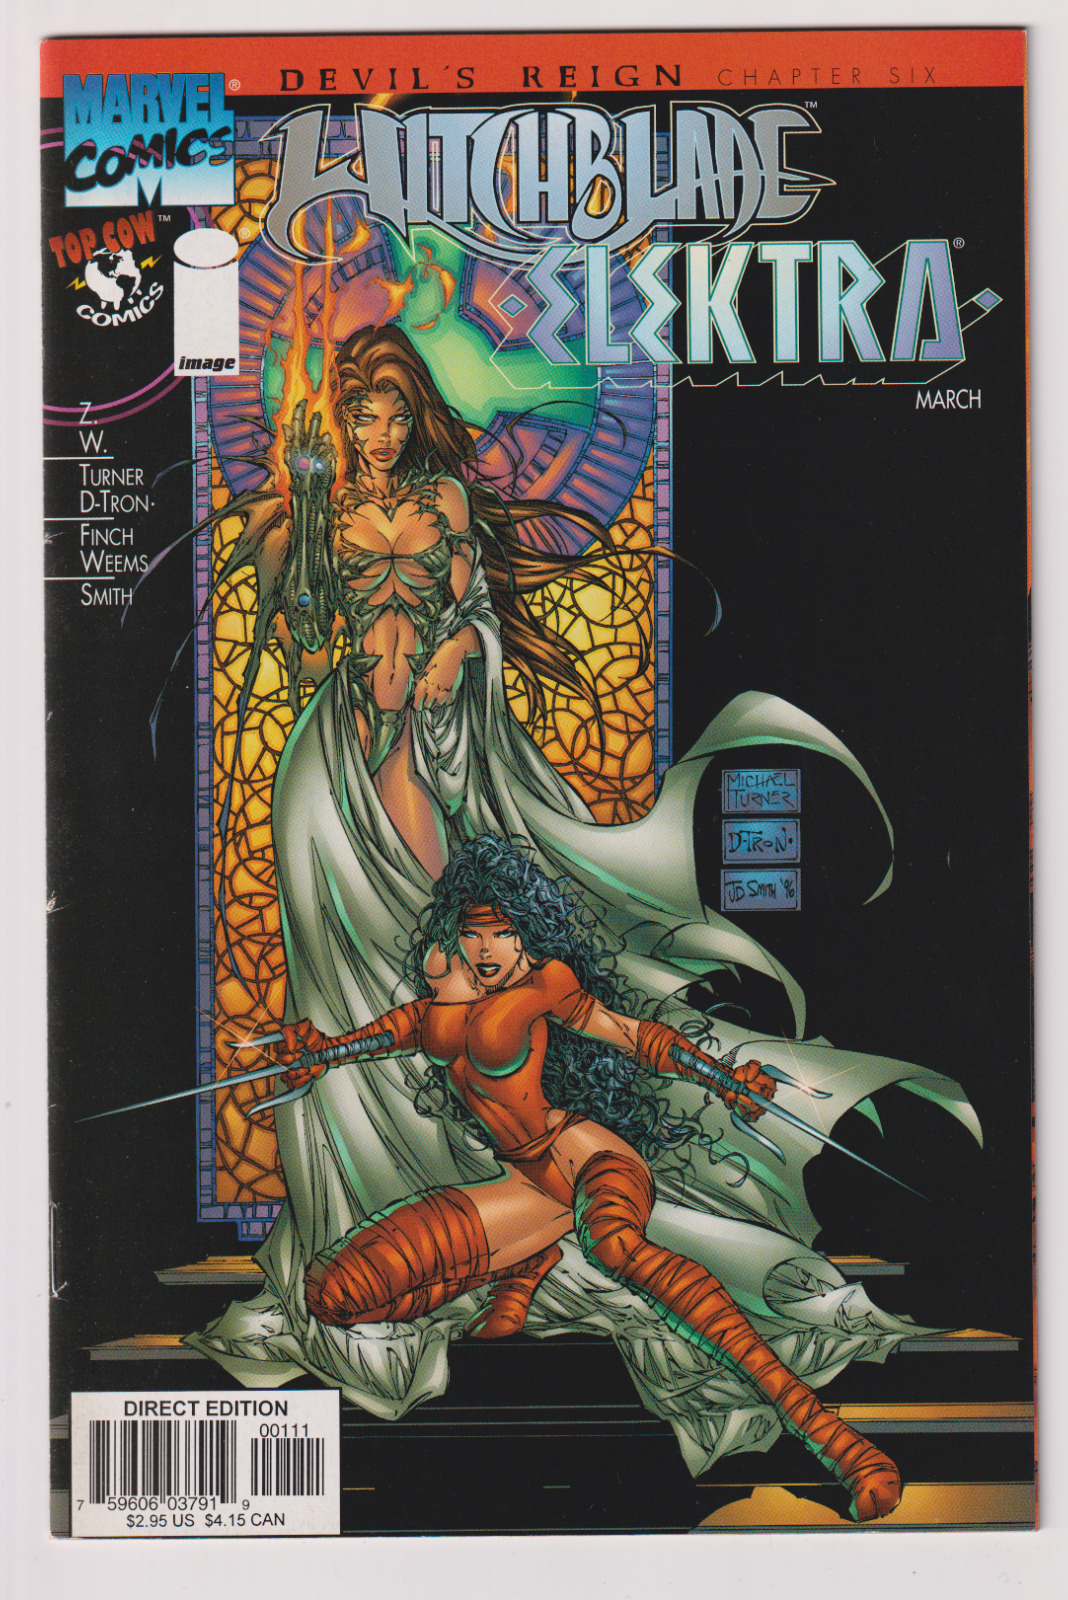 Image Comics Witchblade/Elektra Devil's Reign Chapter 6